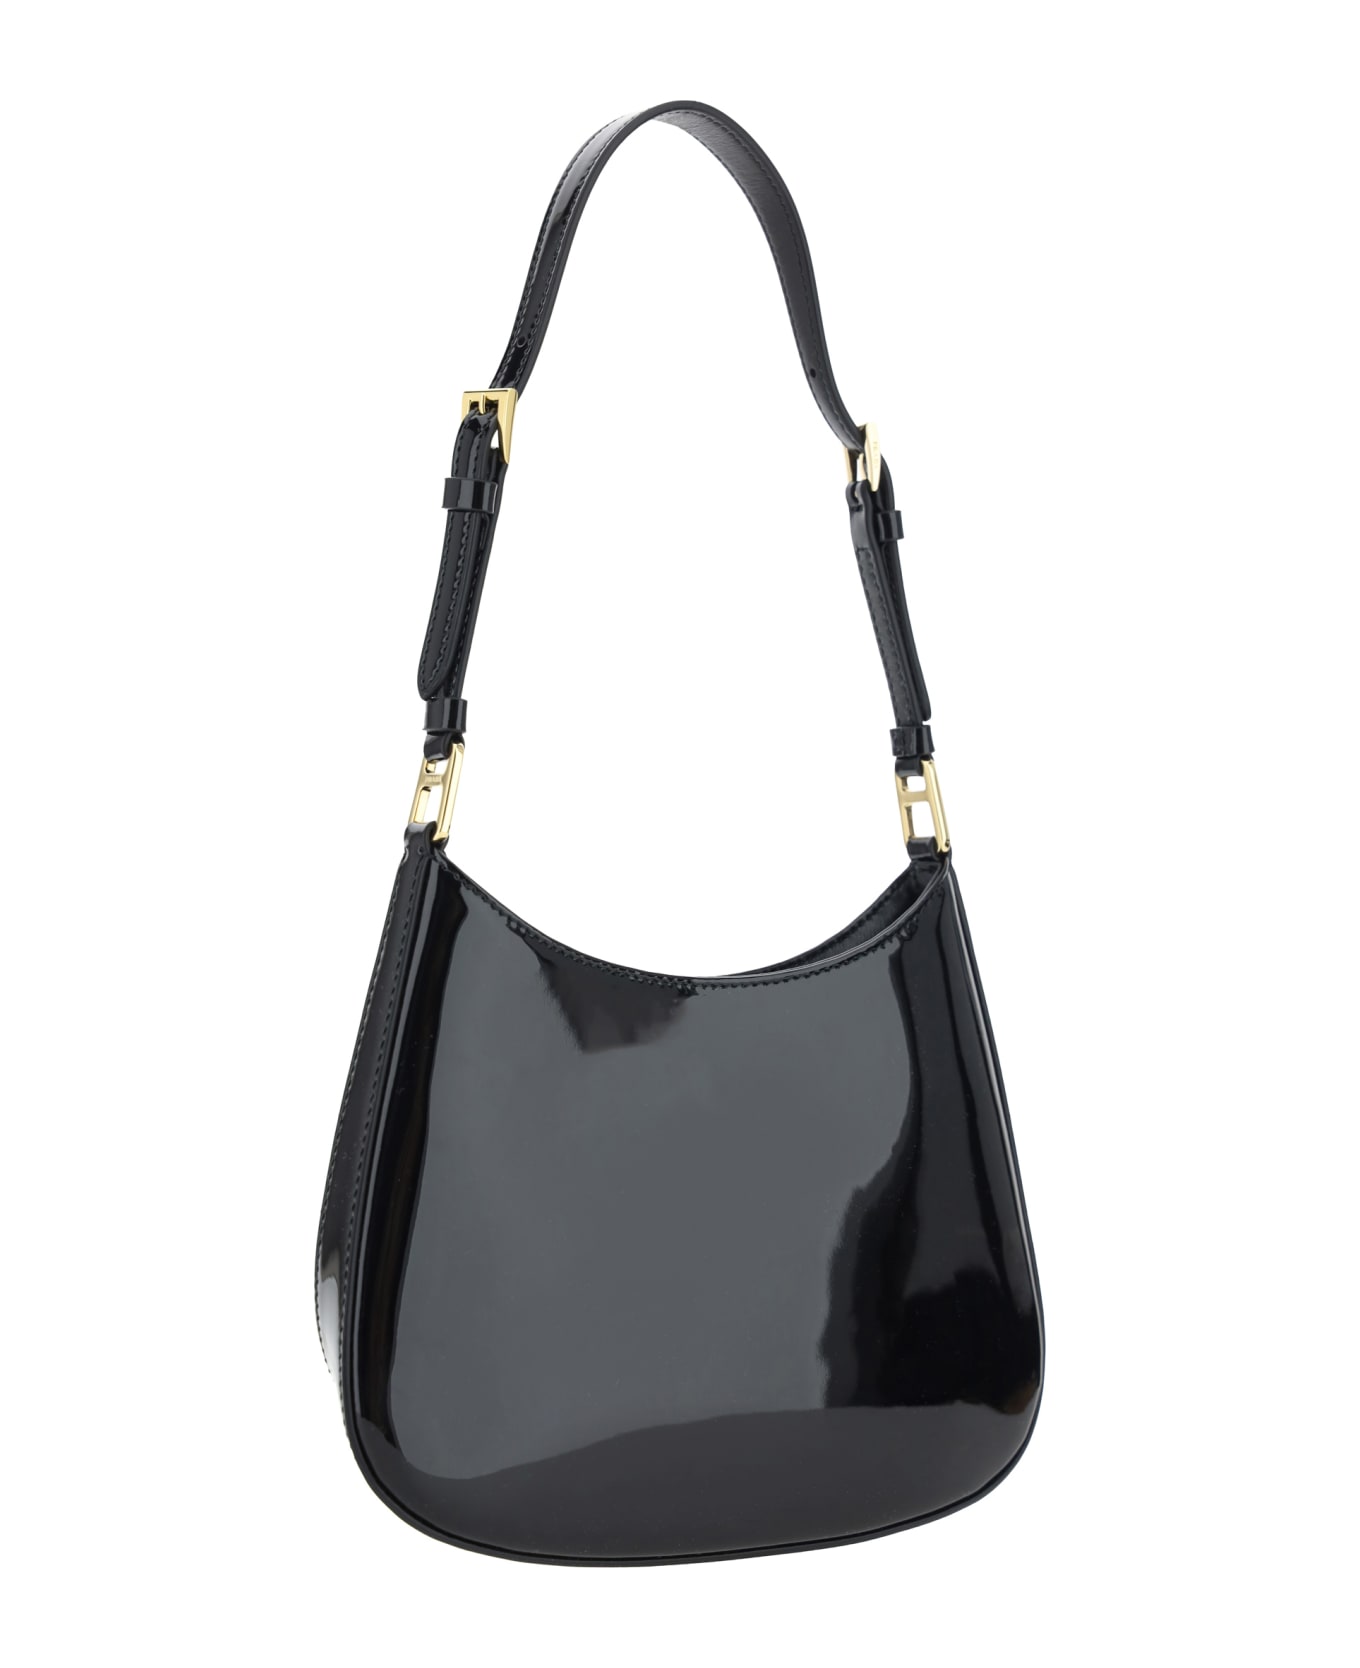 Prada Cleo Shoulder Bag - Black